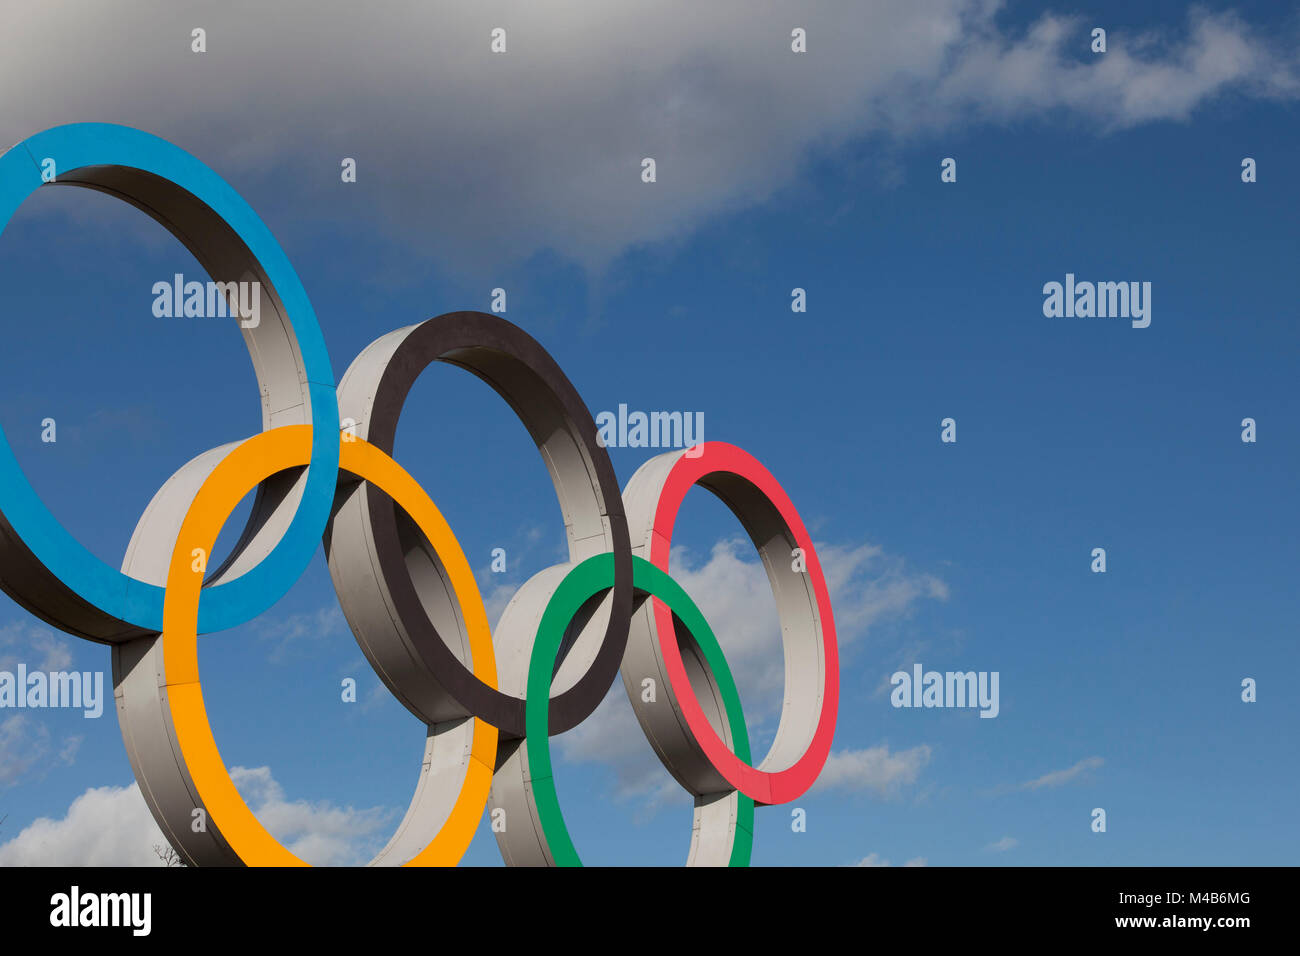 Londres, Reino Unido - 15 de febrero de 2018: El Símbolo Olímpico, compuesto de cinco anillos de color interconectados, bajo un cielo azul Foto de stock